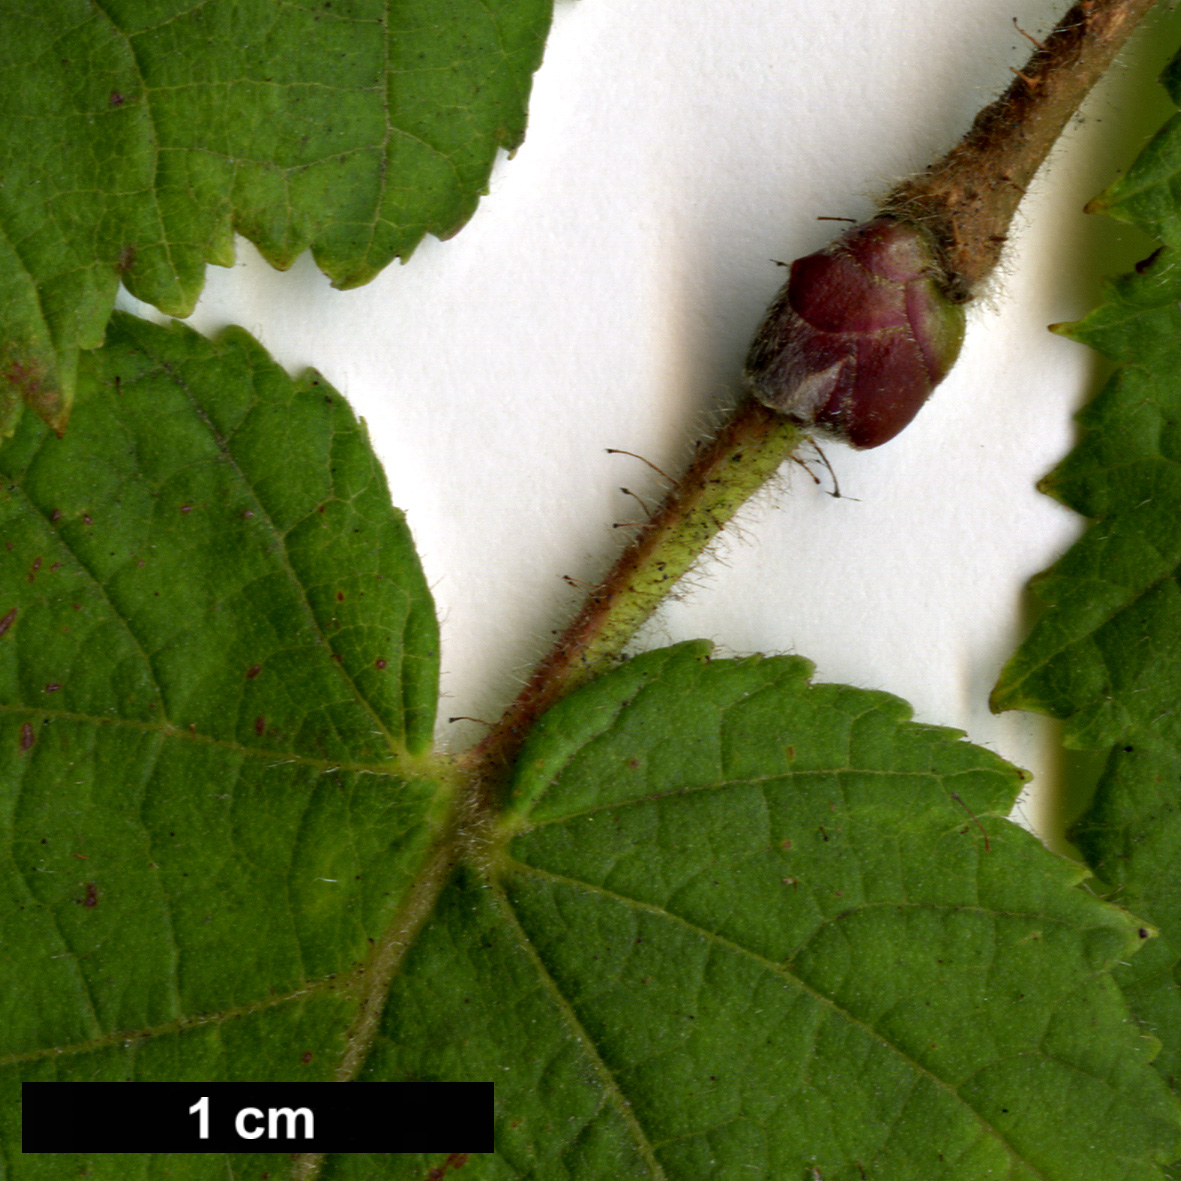 High resolution image: Family: Betulaceae - Genus: Corylus - Taxon: heterophylla - SpeciesSub: var. sutchensis